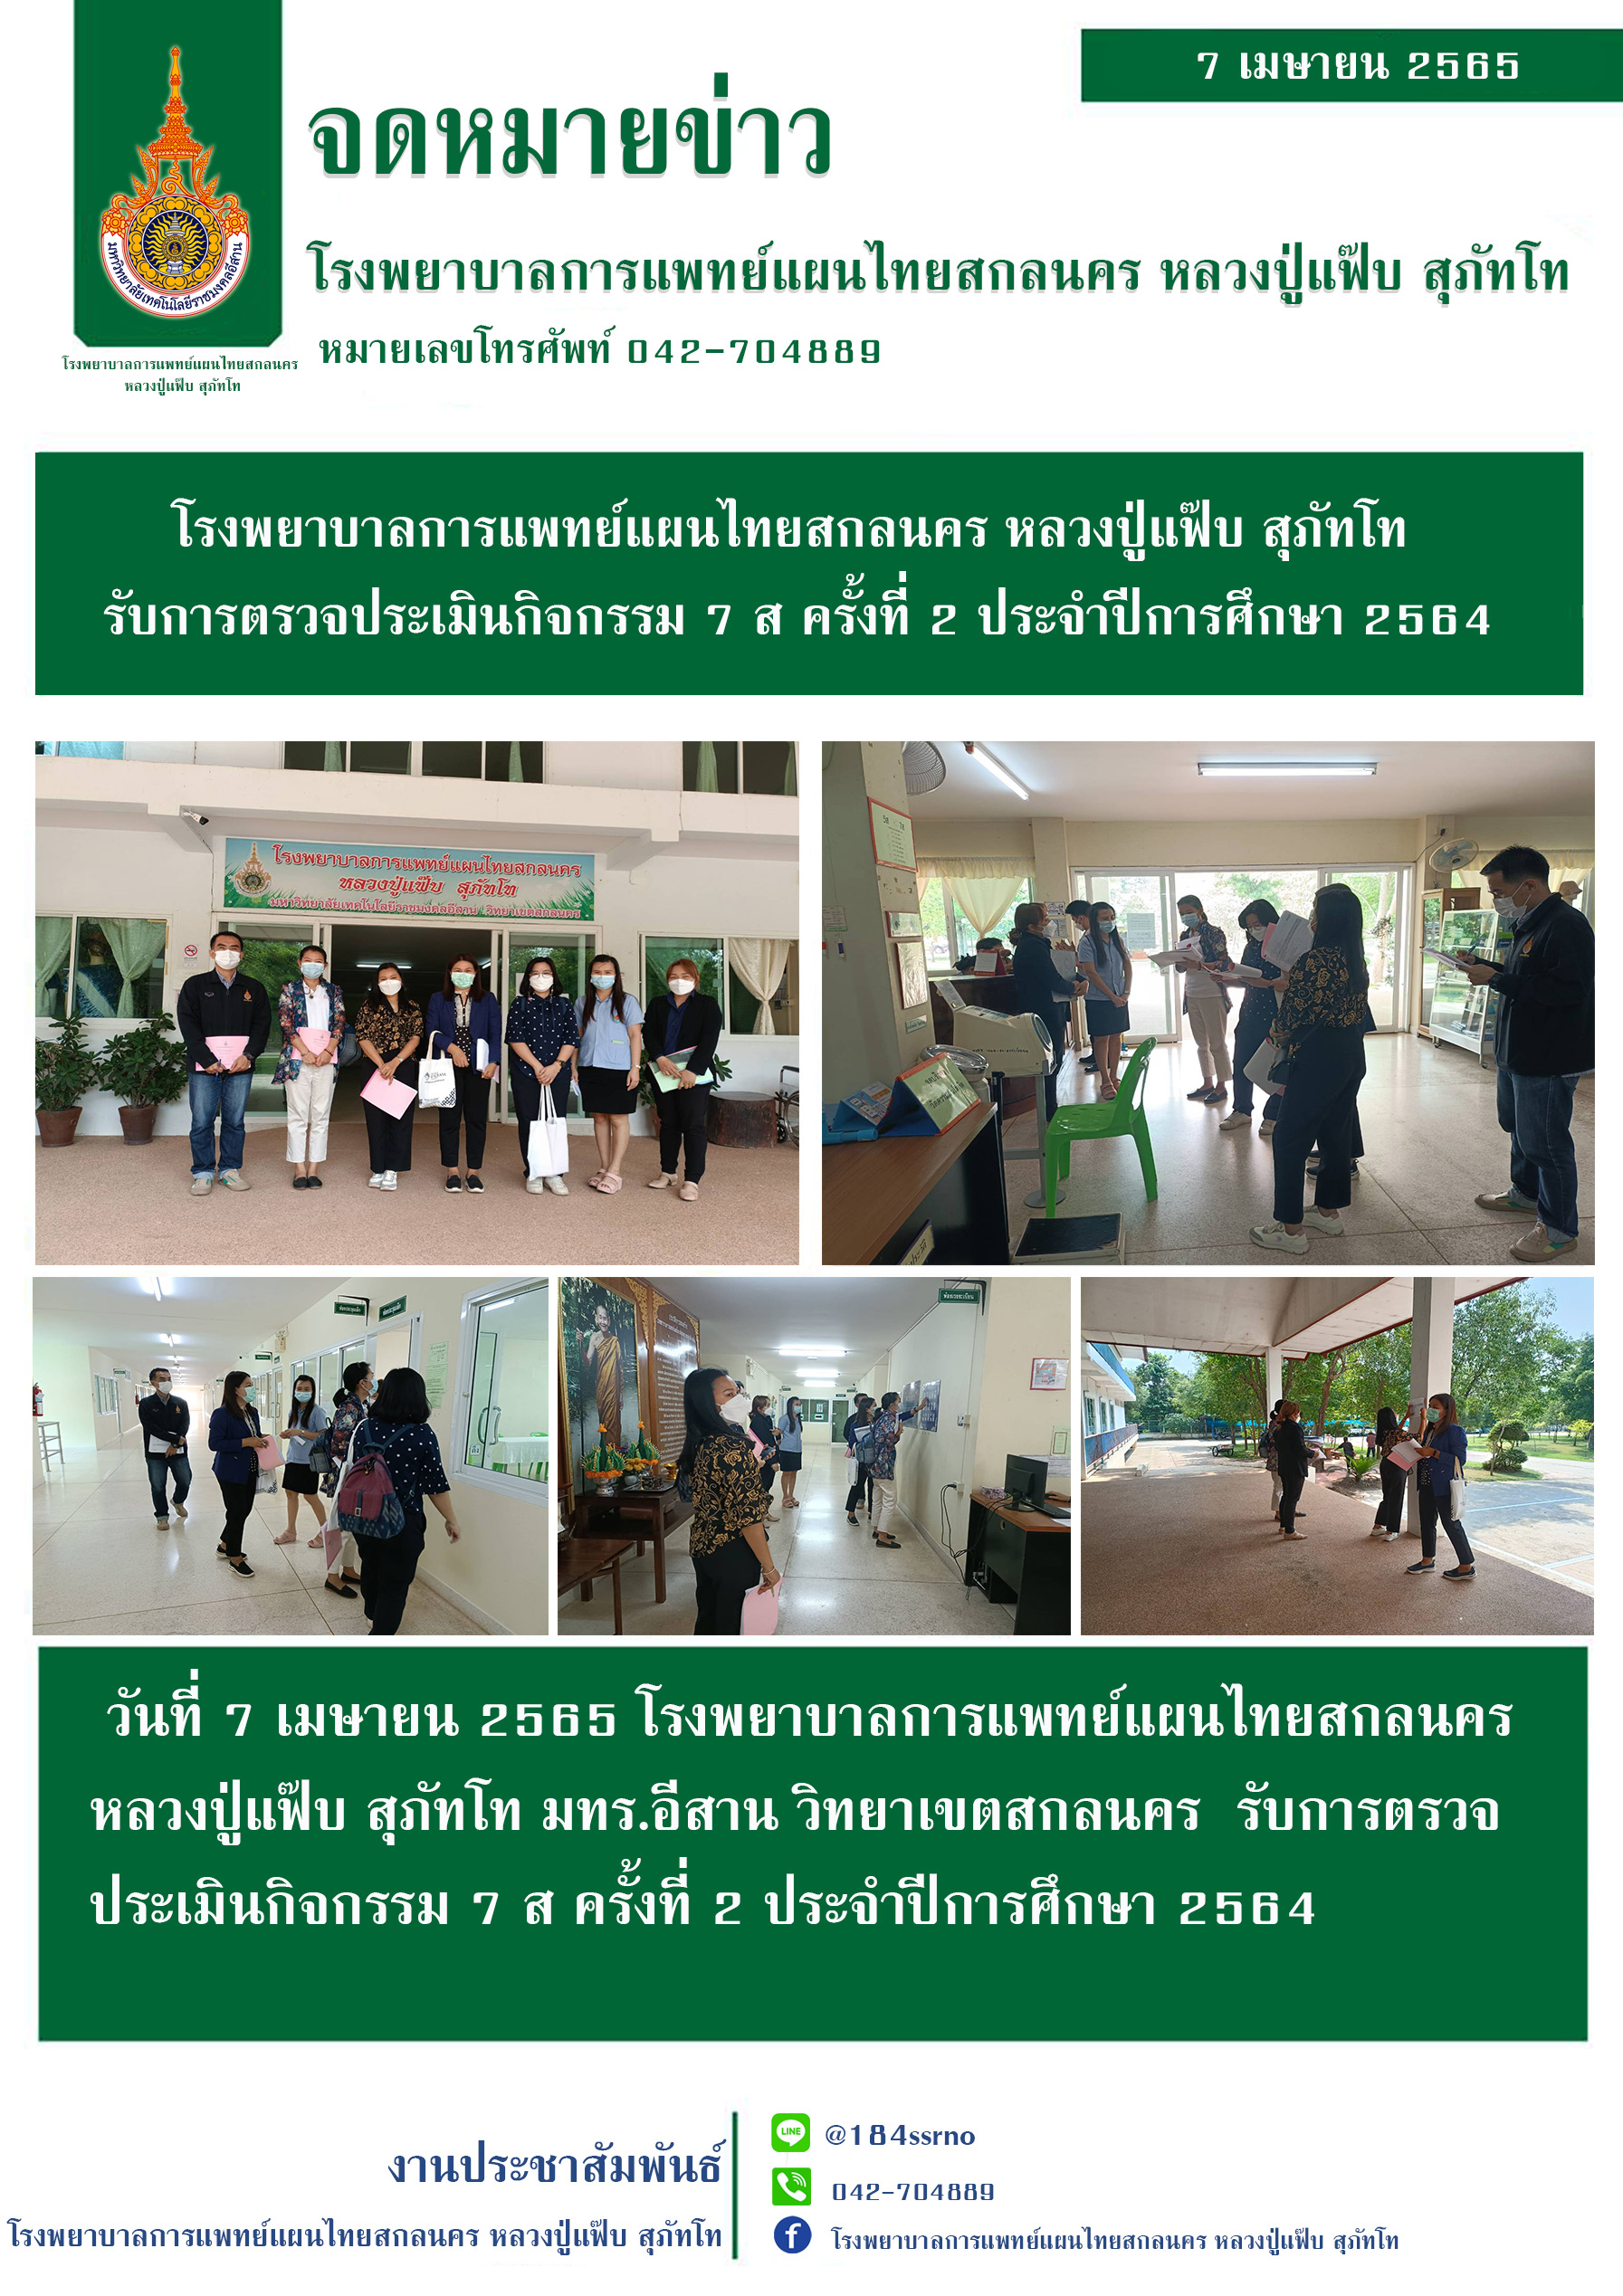 โรงพยาบาลการแพทย์แผนไทยสกลนคร หลวงปู่แฟ๊บ สุภัทโท รับการตรวจประเมินกิจกรรม 7 ส ครั้งที่ 2 ประจำปีการศึกษา 2564